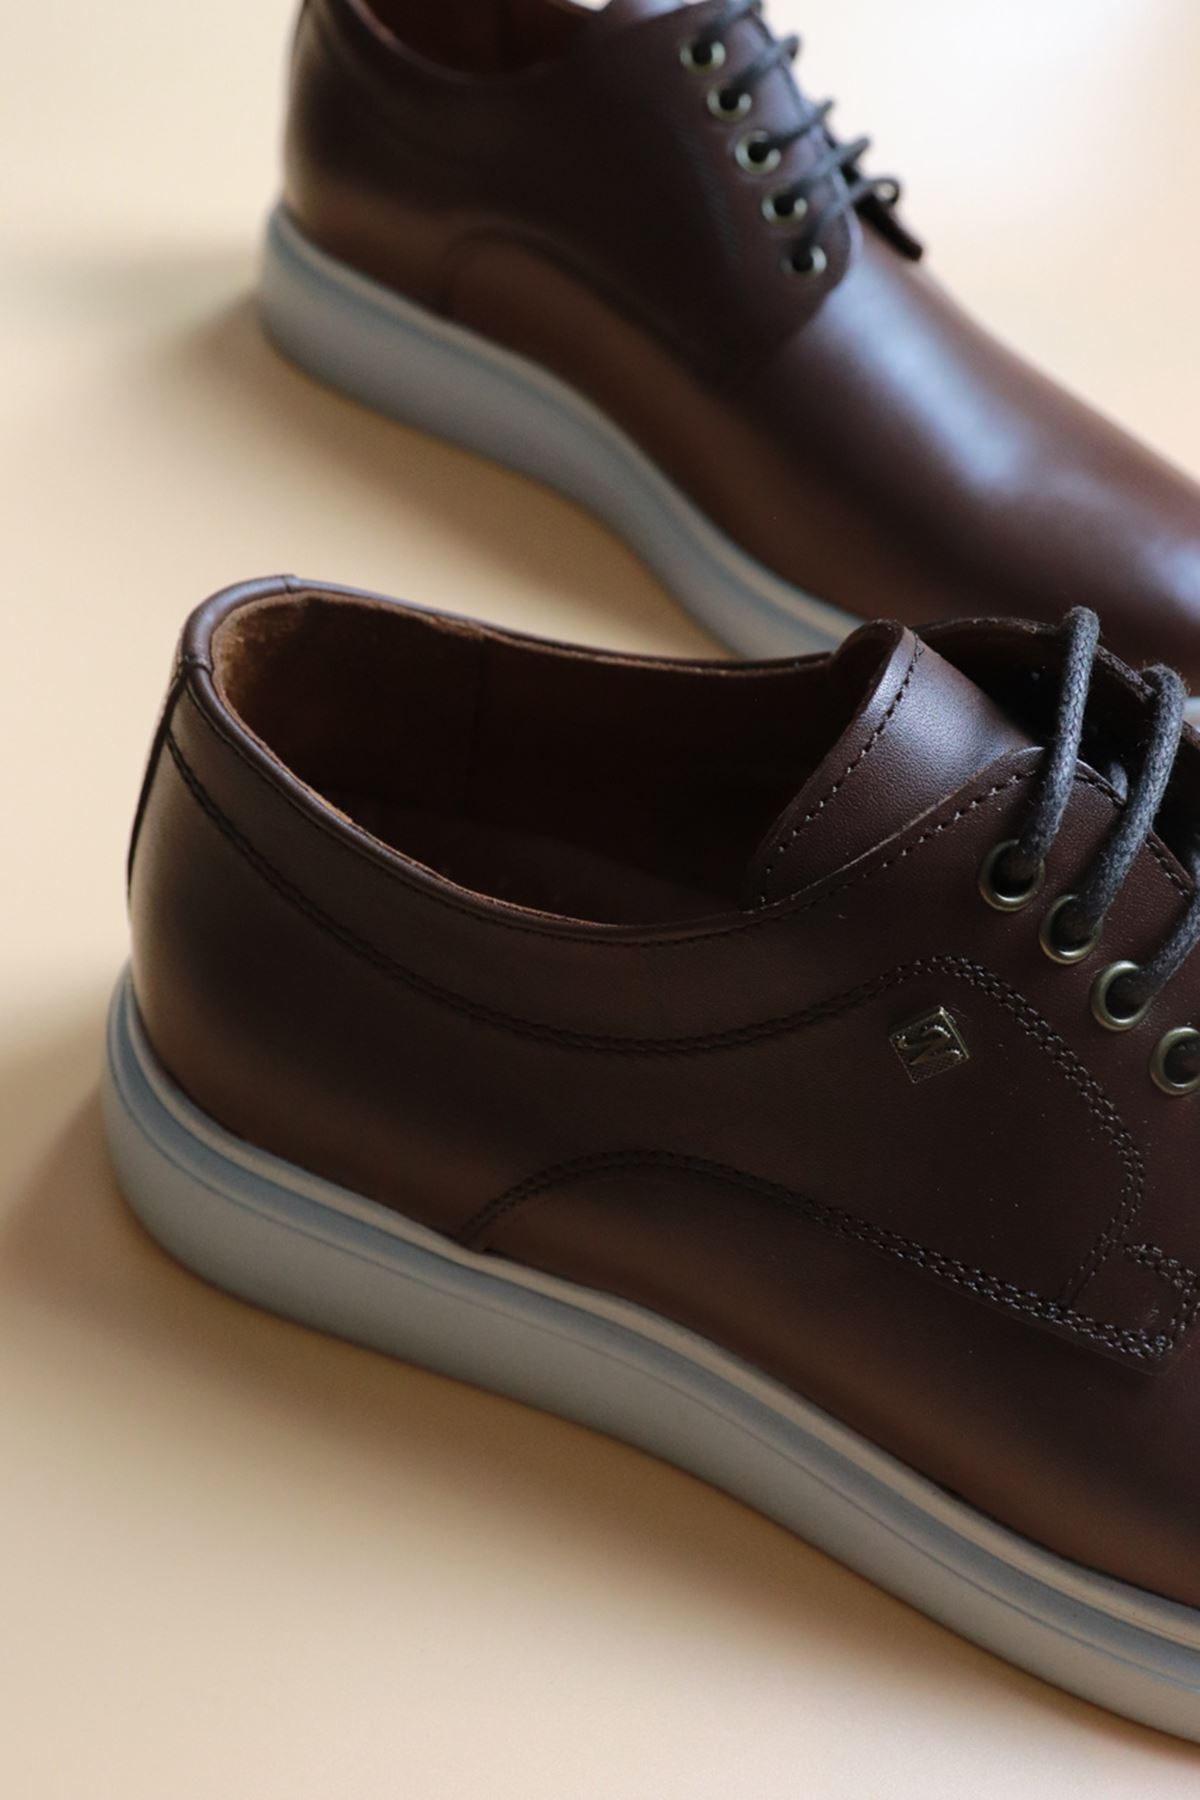 Trendayakkabı - Kahve Hakiki deri Erkek Klasik Ayakkabı